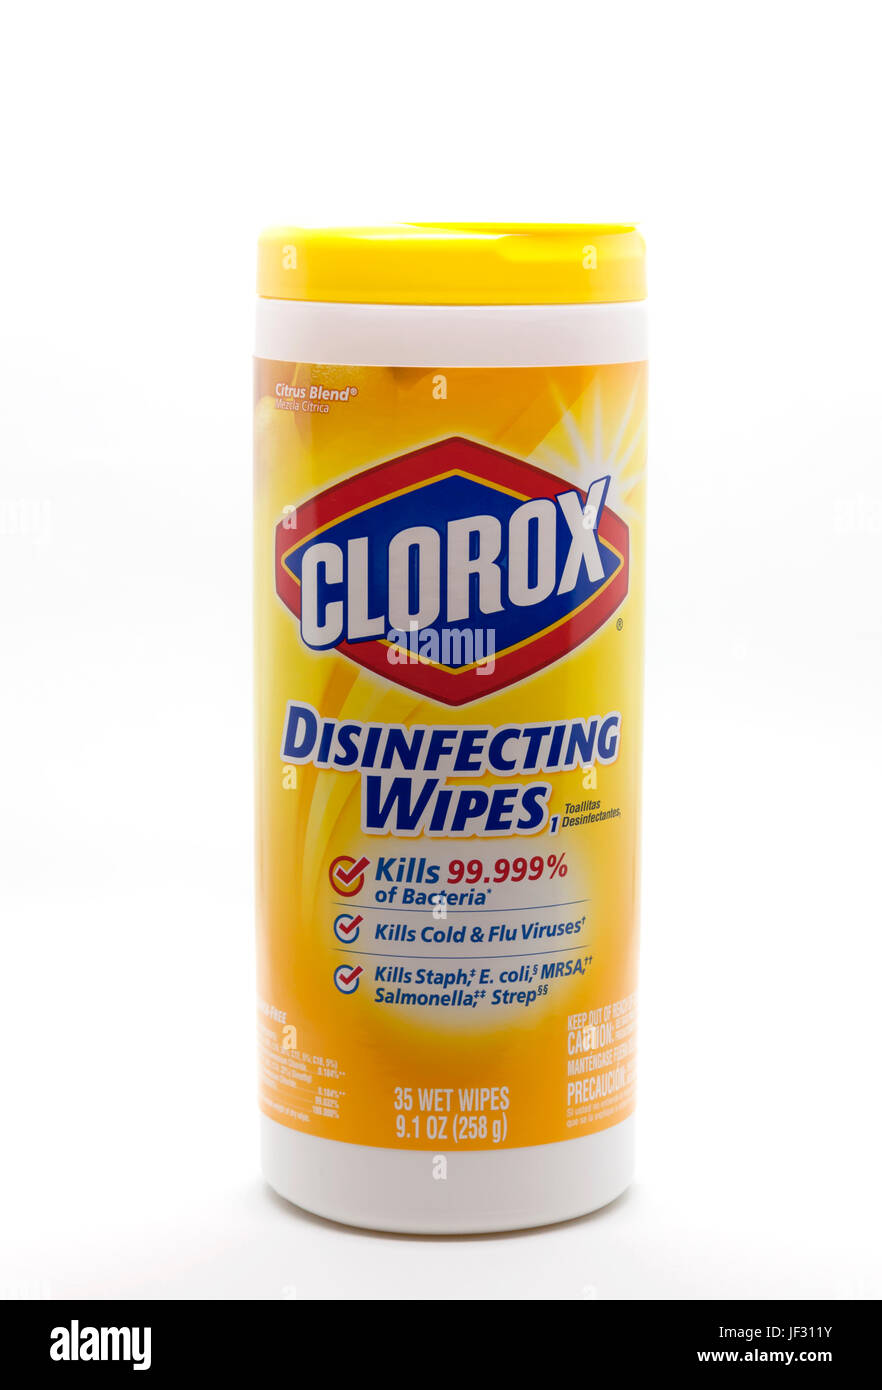 Toallitas desinfectantes Clorox en un contenedor que limpia, desinfecta y mata los gérmenes y bacterias. Foto de stock